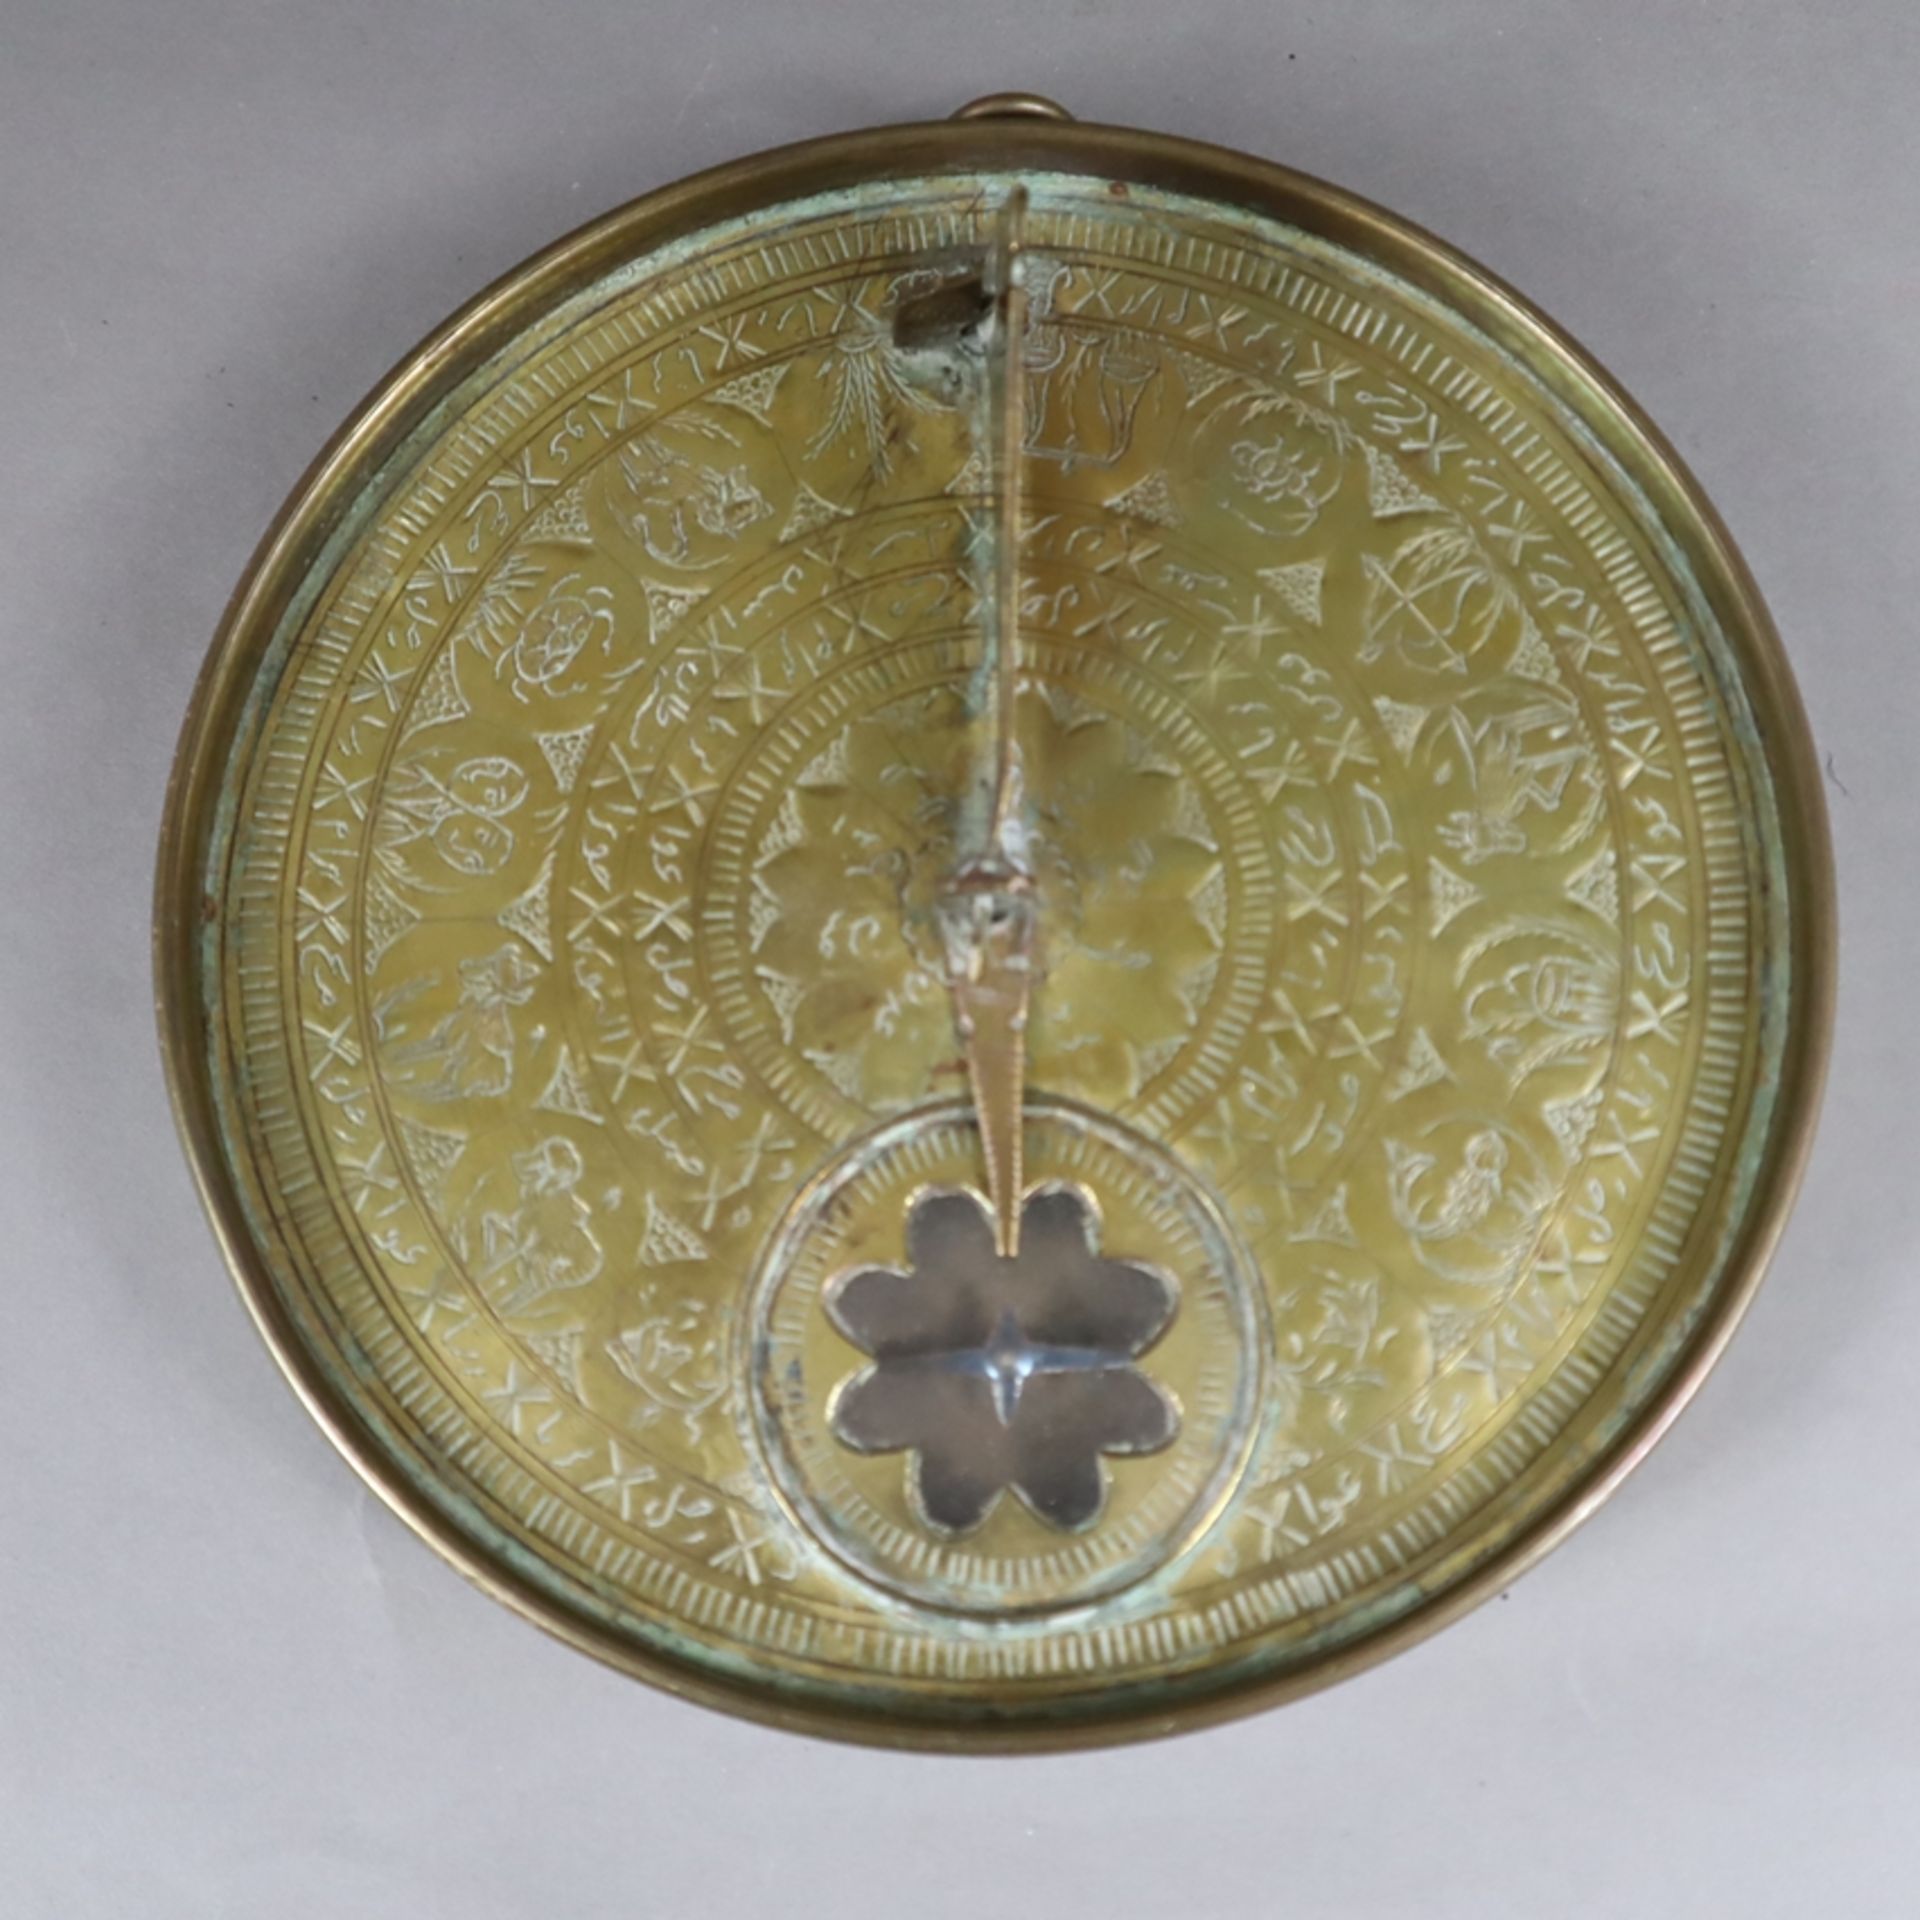 Qibla-Zeiger- wohl Persien 19.Jh., Messing, runde, leicht vertiefte Form, graviert, unter anderem m